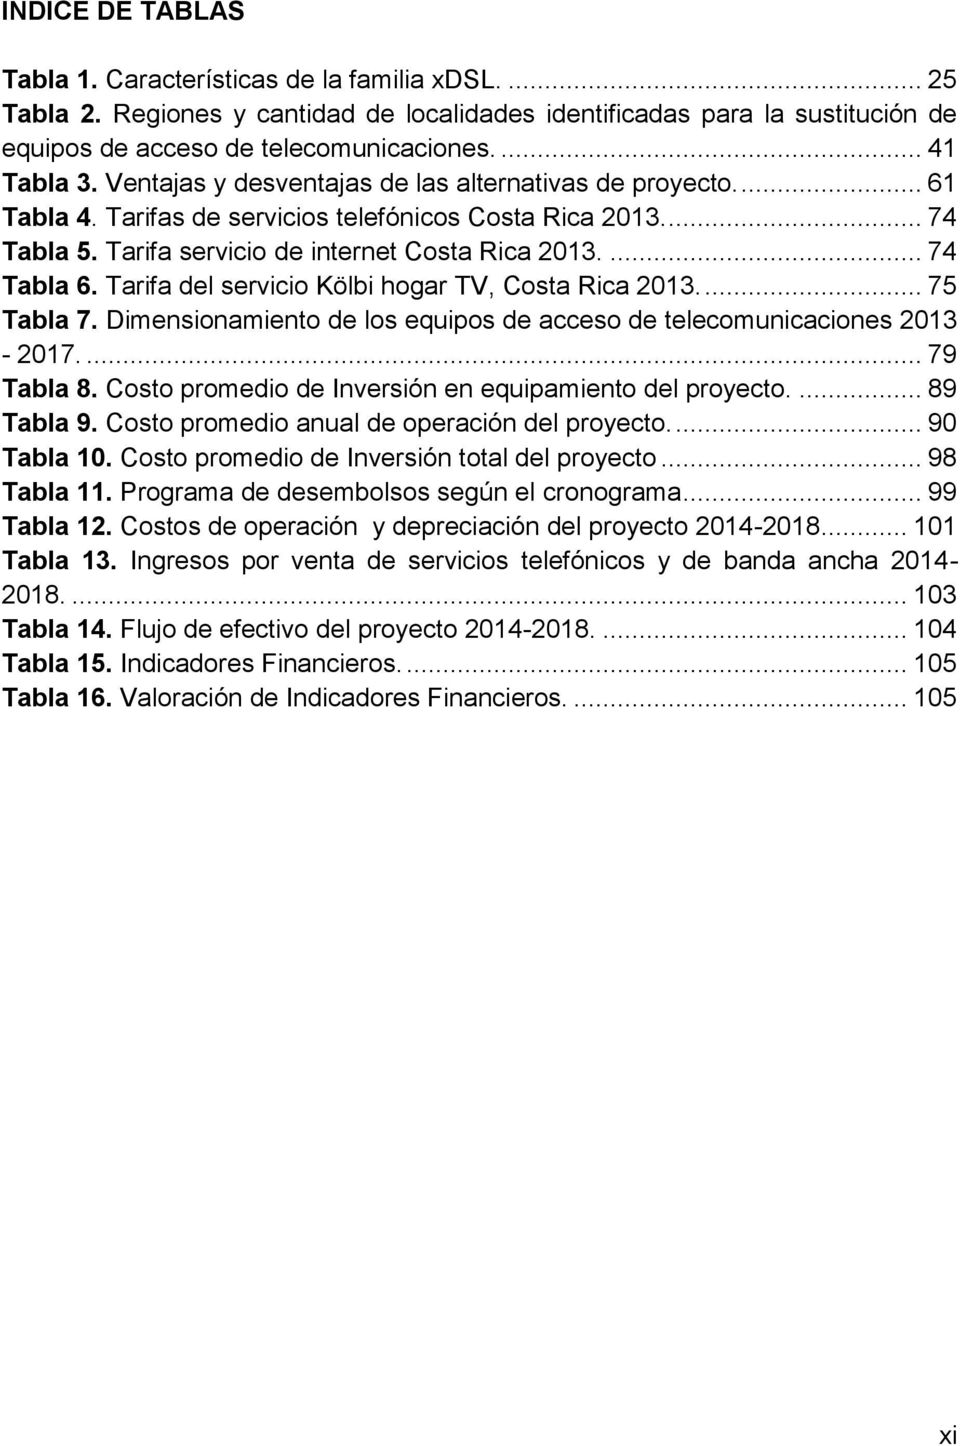 ... 74 Tabla 6. Tarifa del servicio Kölbi hogar TV, Costa Rica 2013.... 75 Tabla 7. Dimensionamiento de los equipos de acceso de telecomunicaciones 2013-2017.... 79 Tabla 8.